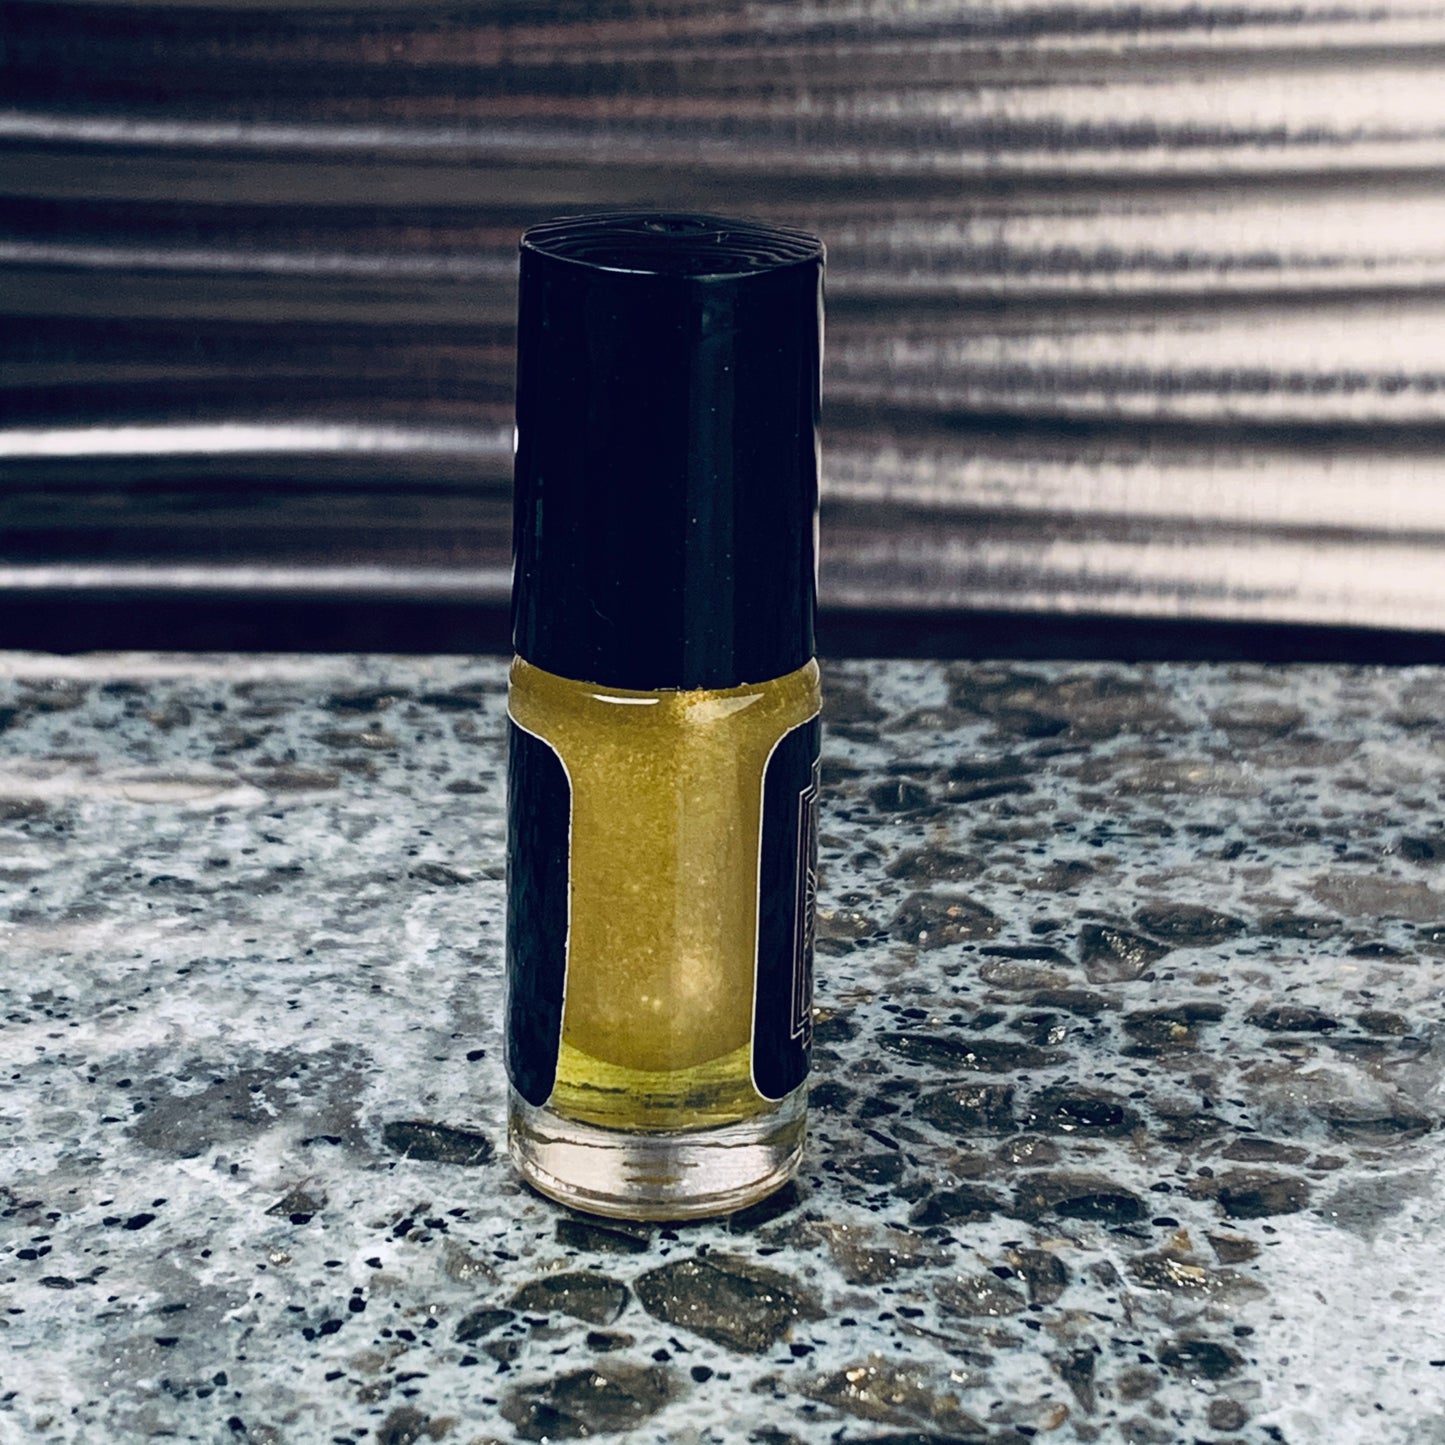 LIQUID GOLD Dual Phase Perfume Oil